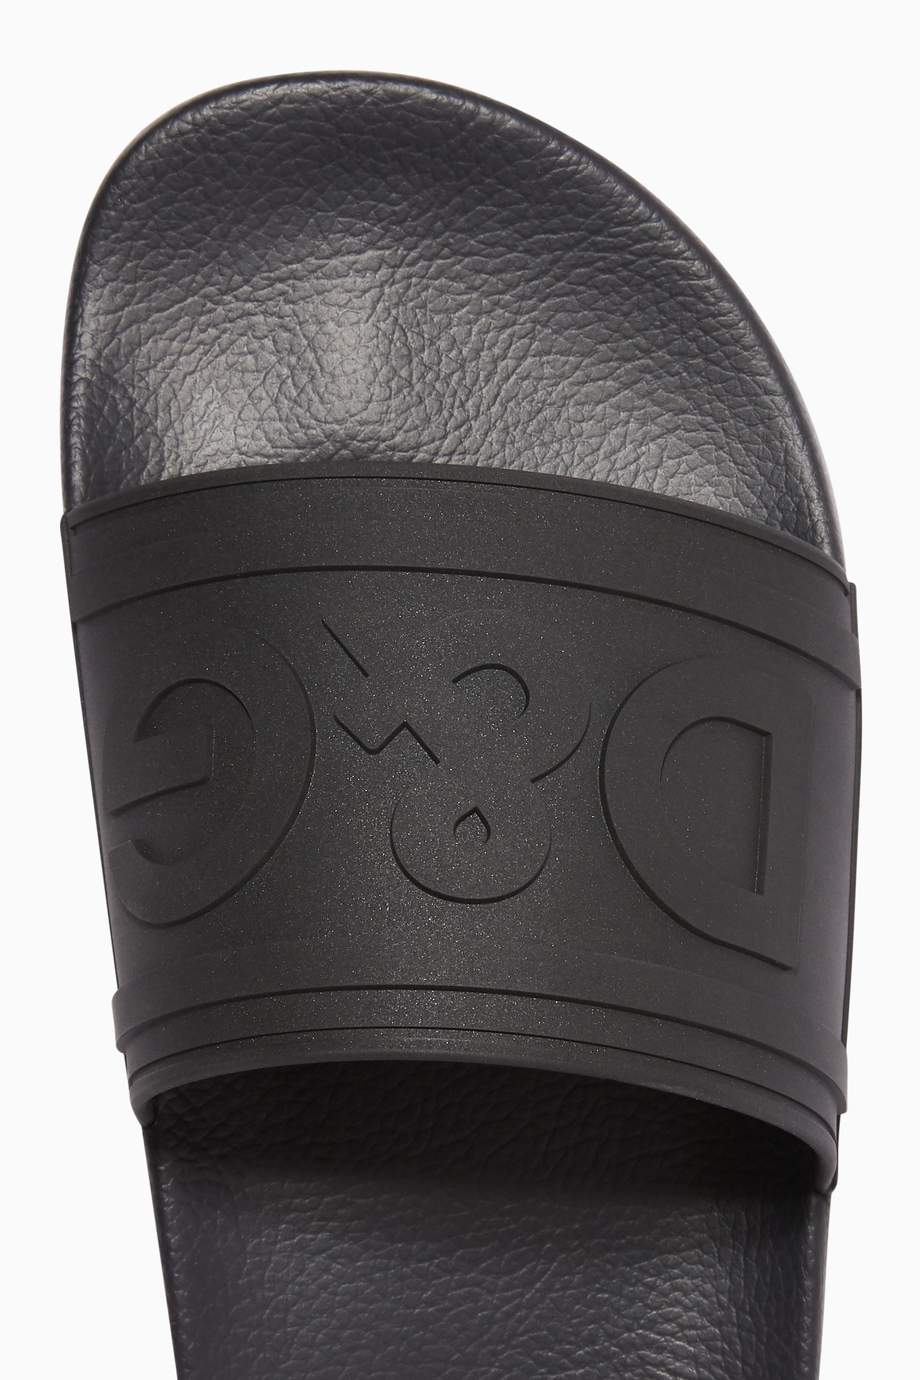 Shop Dolce & Gabbana Black DG Logo Rubber Slides for Men | Ounass UAE